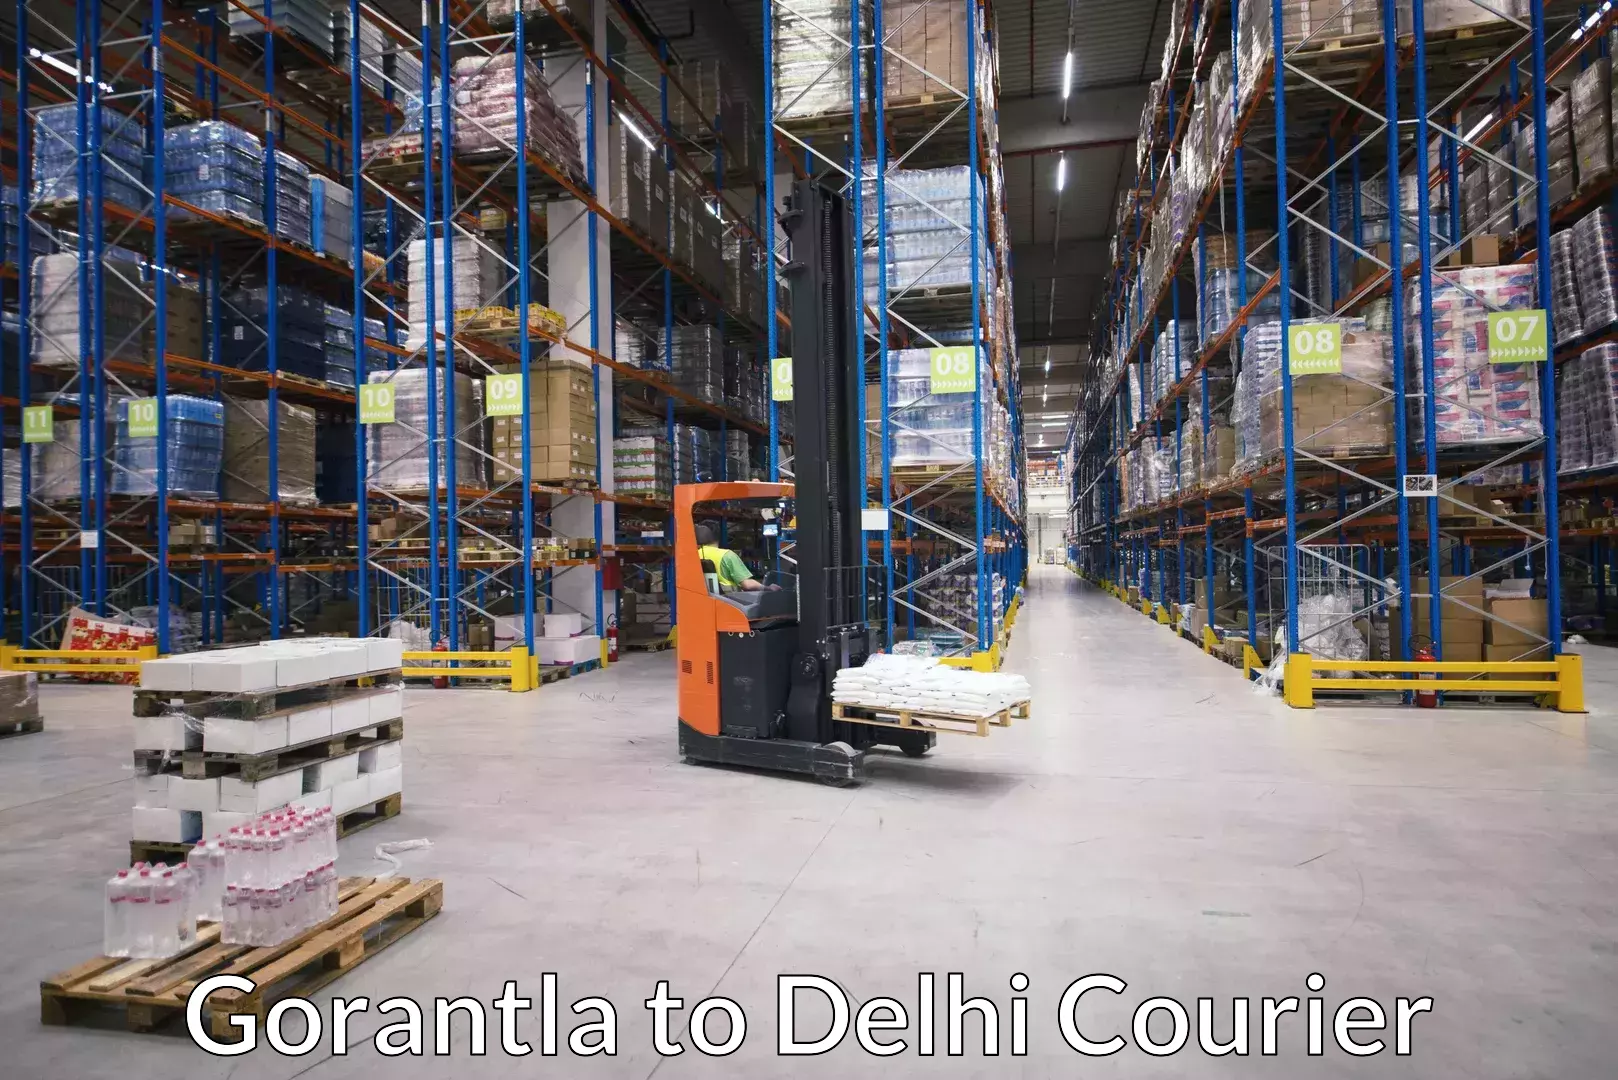 Professional movers in Gorantla to Delhi